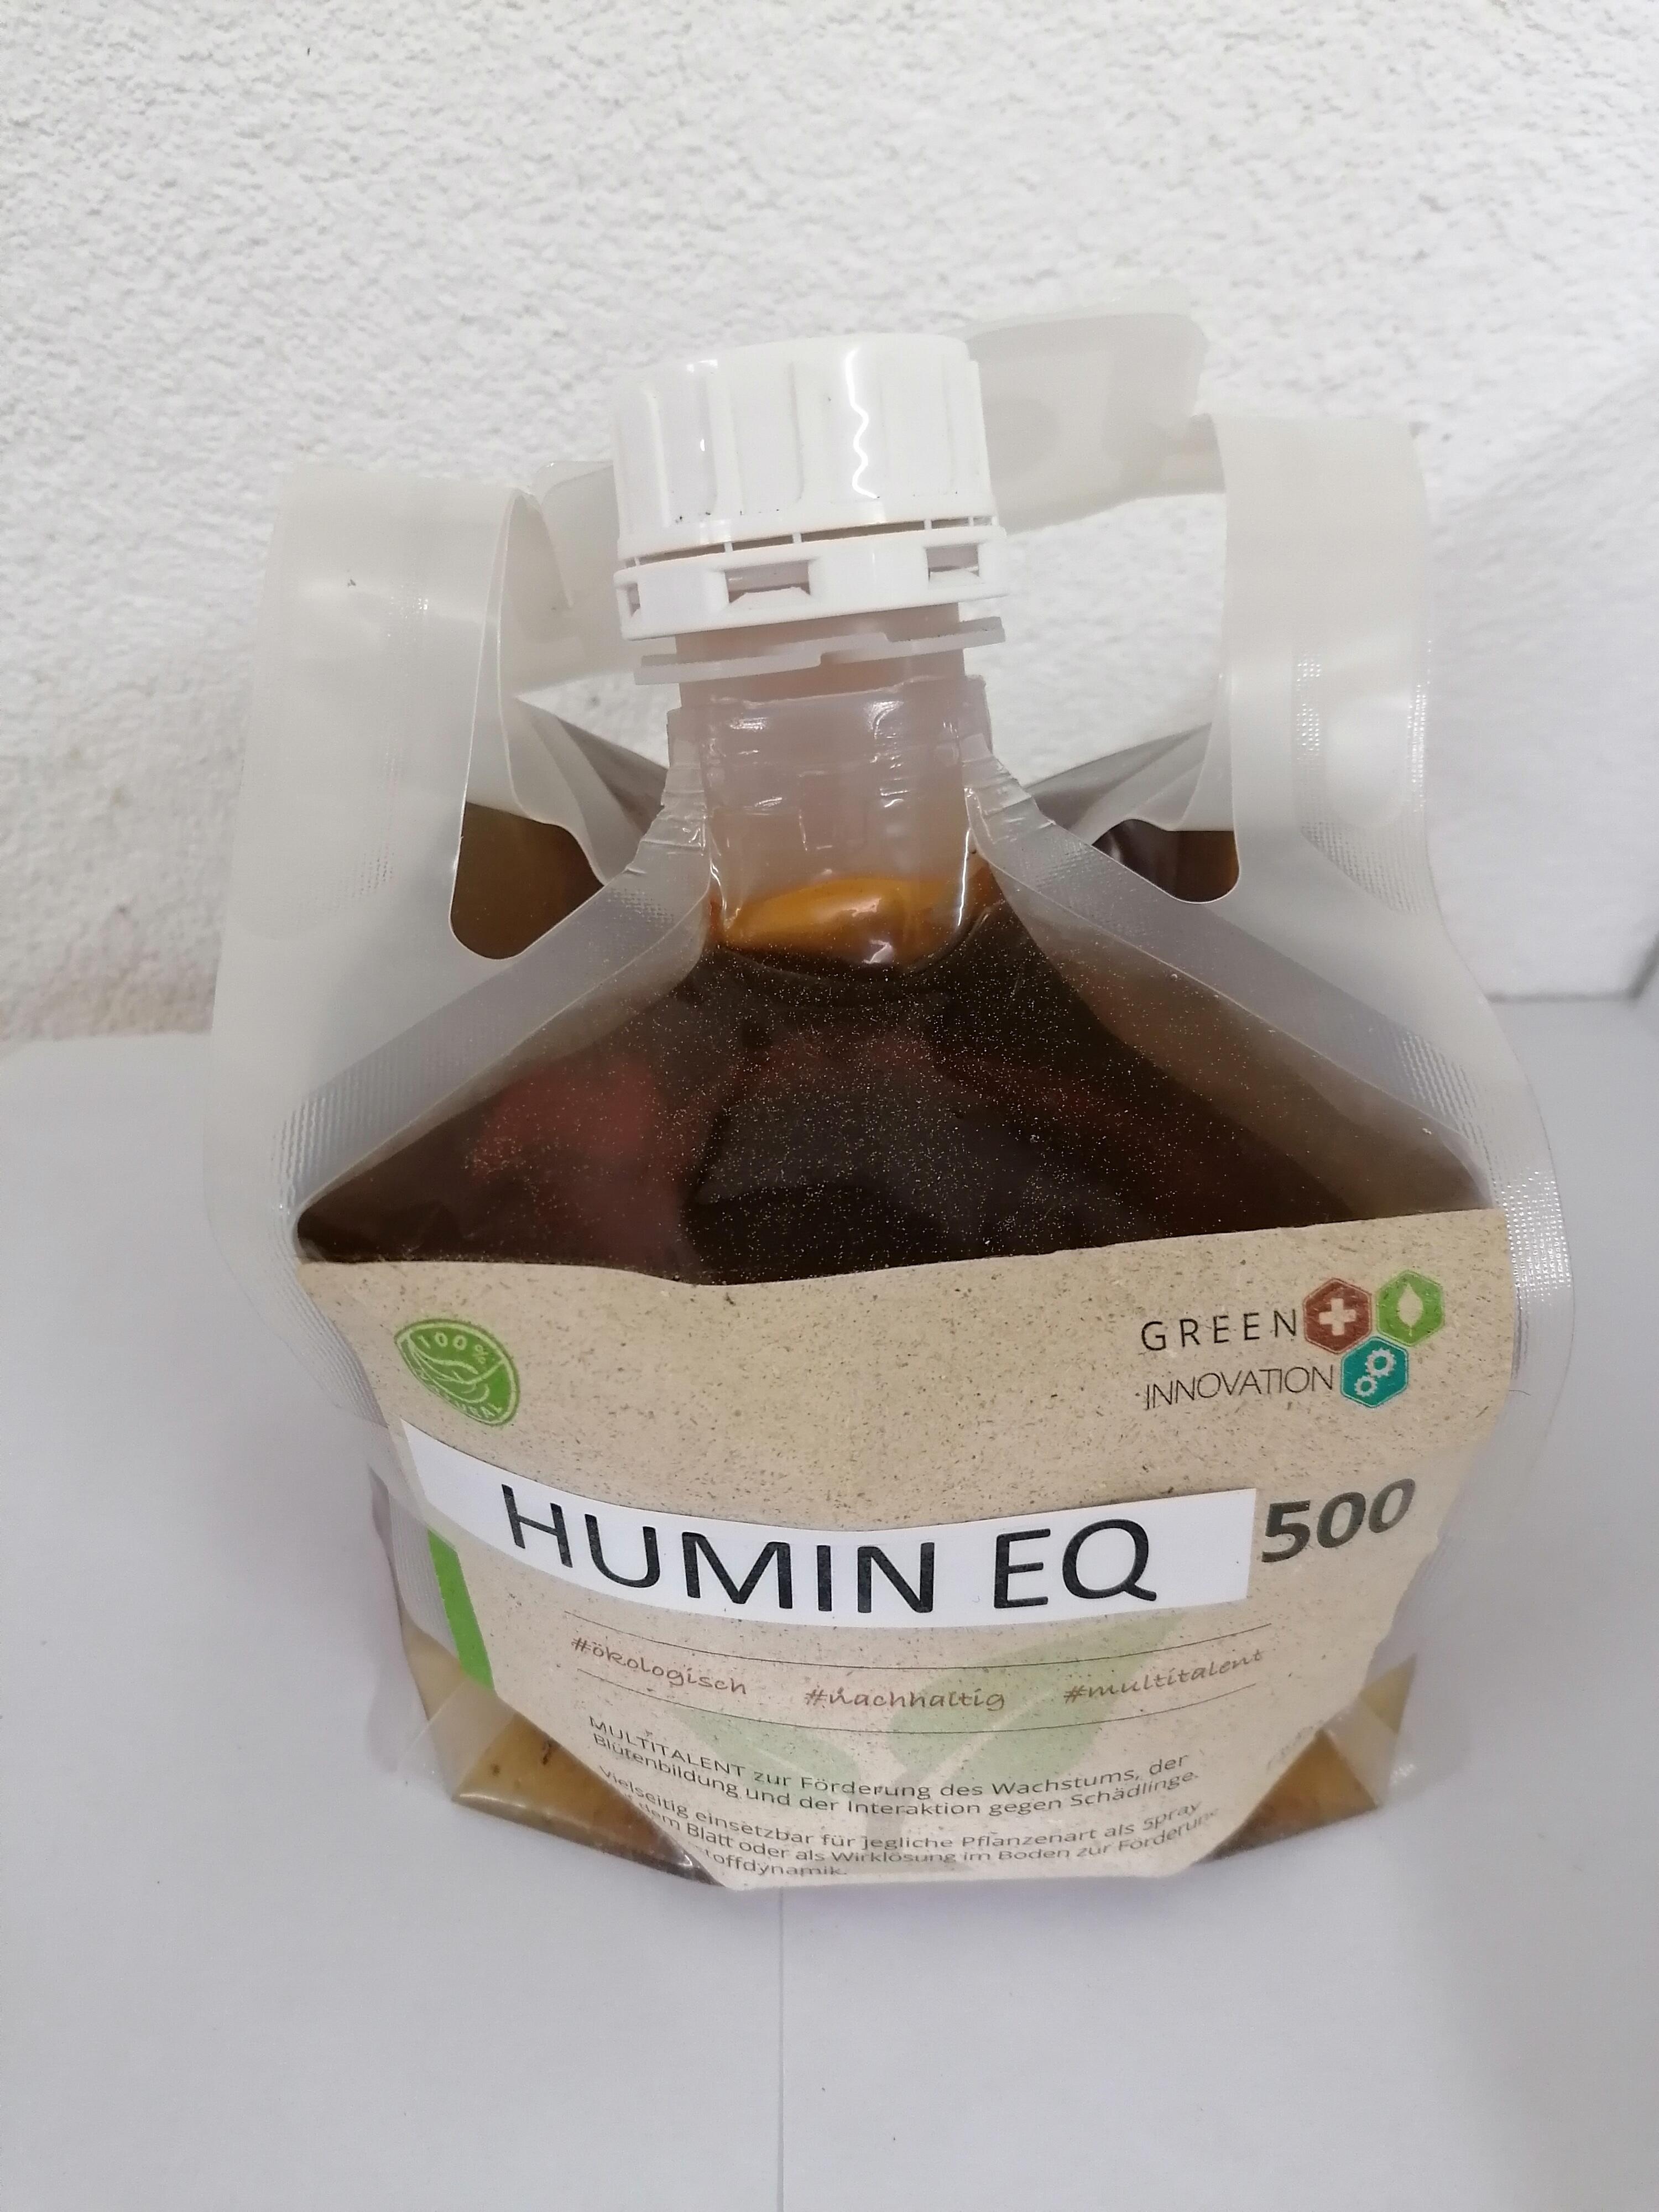 HUMIN EQ 500